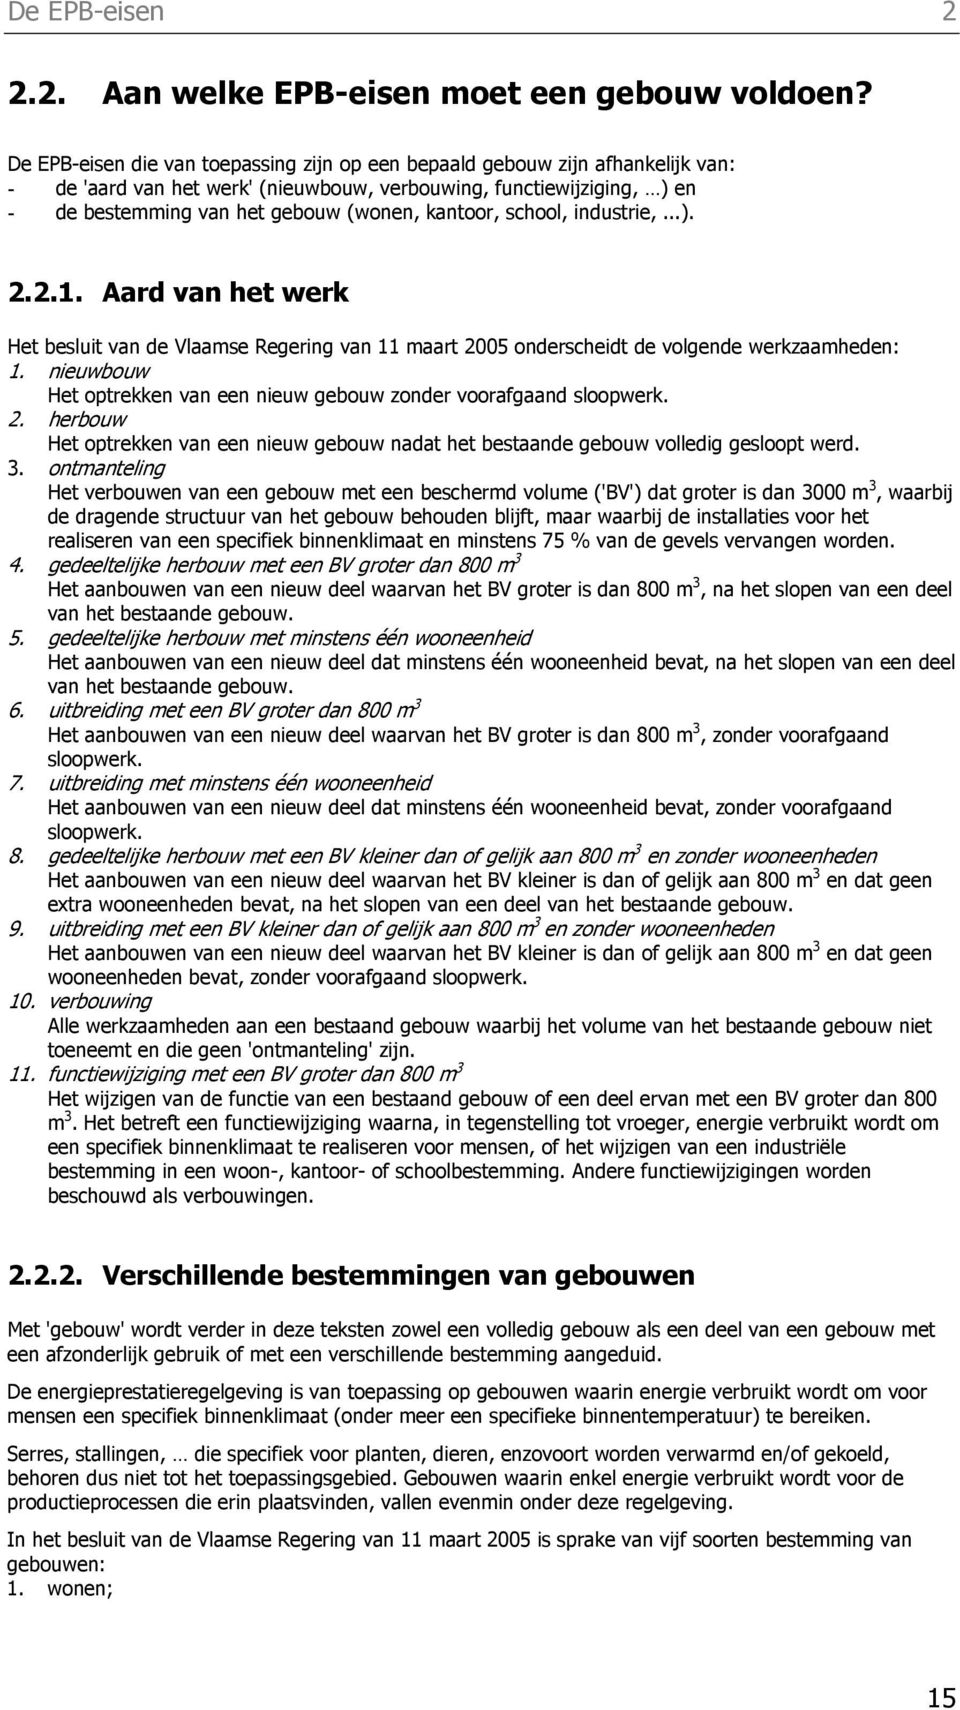 kantoor, school, industrie,...). 2.2.1. Aard van het werk Het besluit van de Vlaamse Regering van 11 maart 2005 onderscheidt de volgende werkzaamheden: 1.